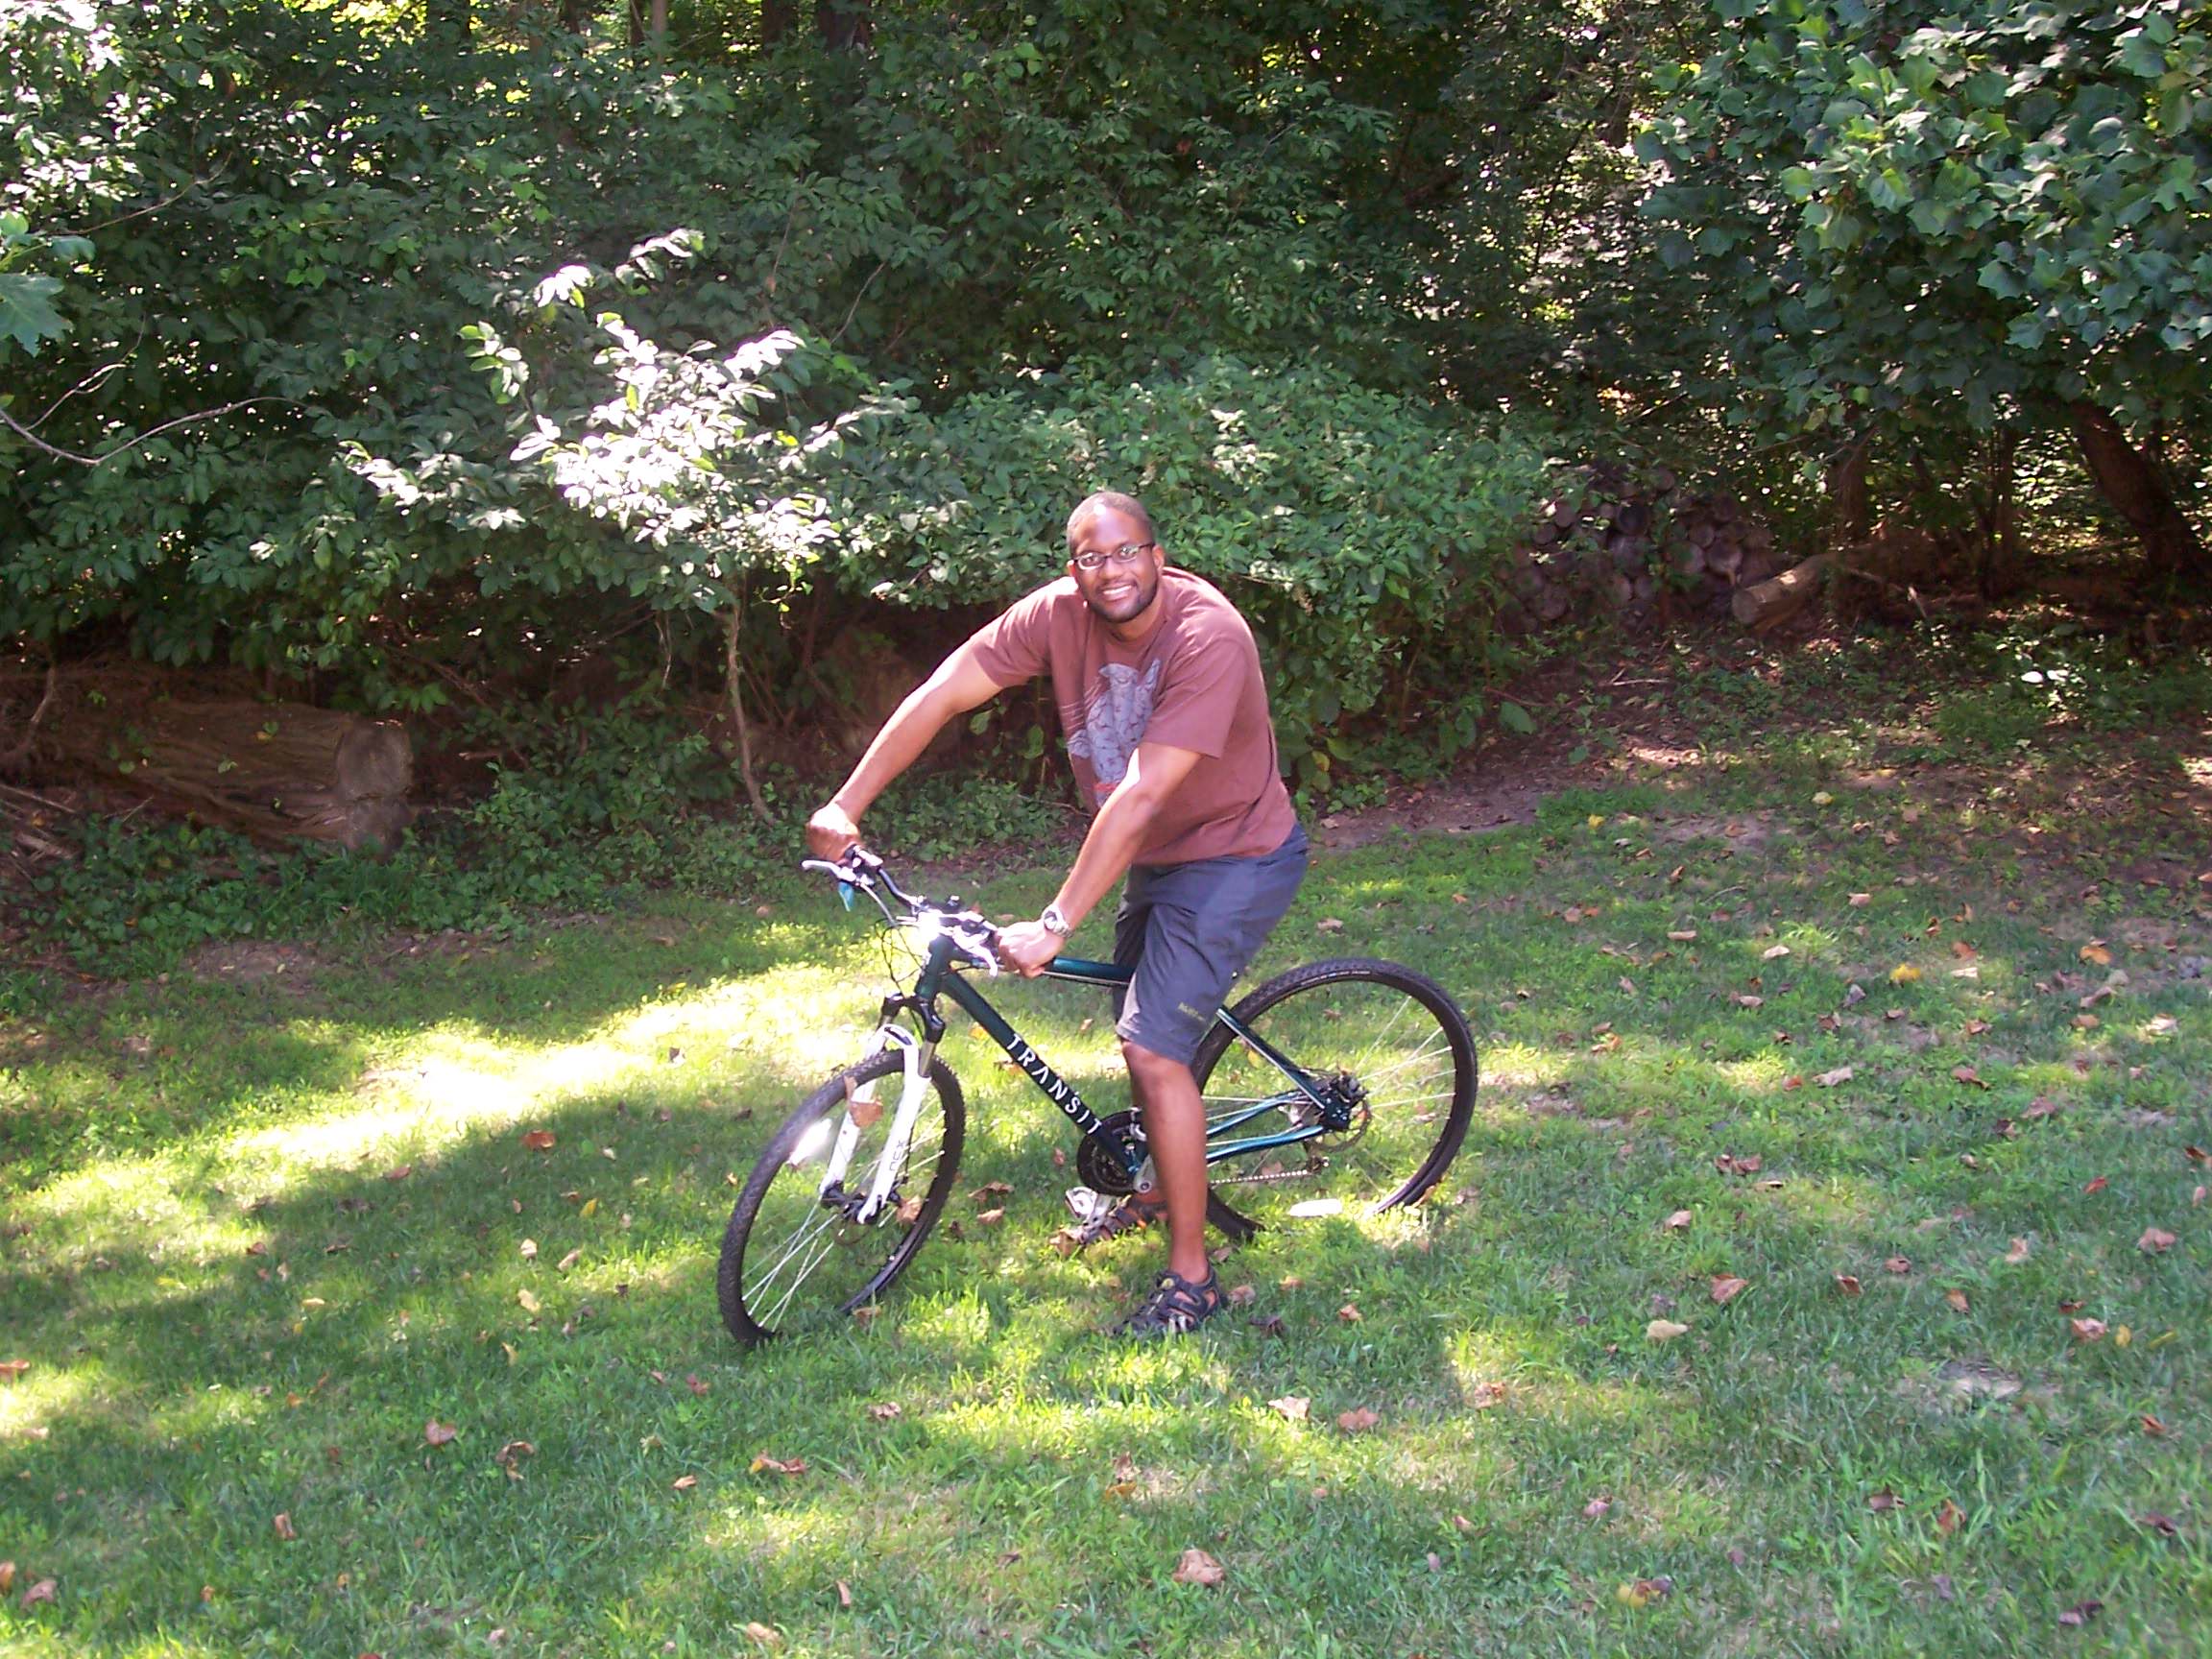 Thorpe biking near his home in Maryland.